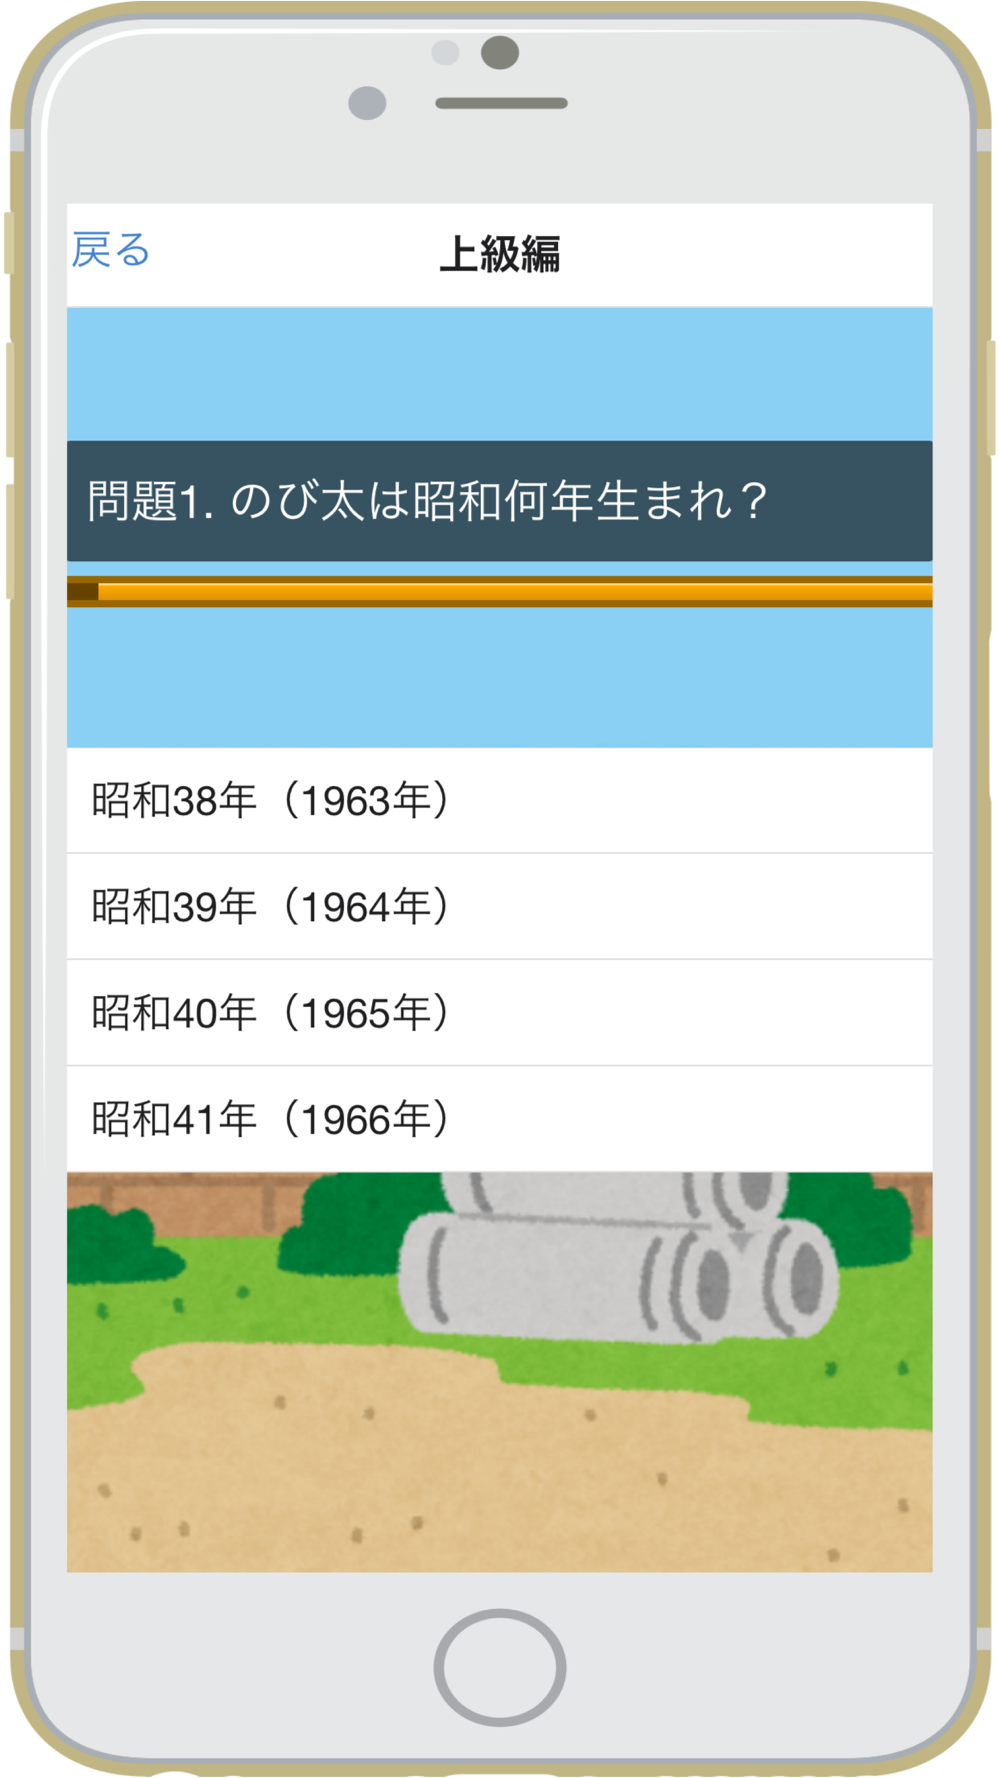 クイズforドラえもん Quiz For Doraemon Free Download App For Iphone Steprimo Com